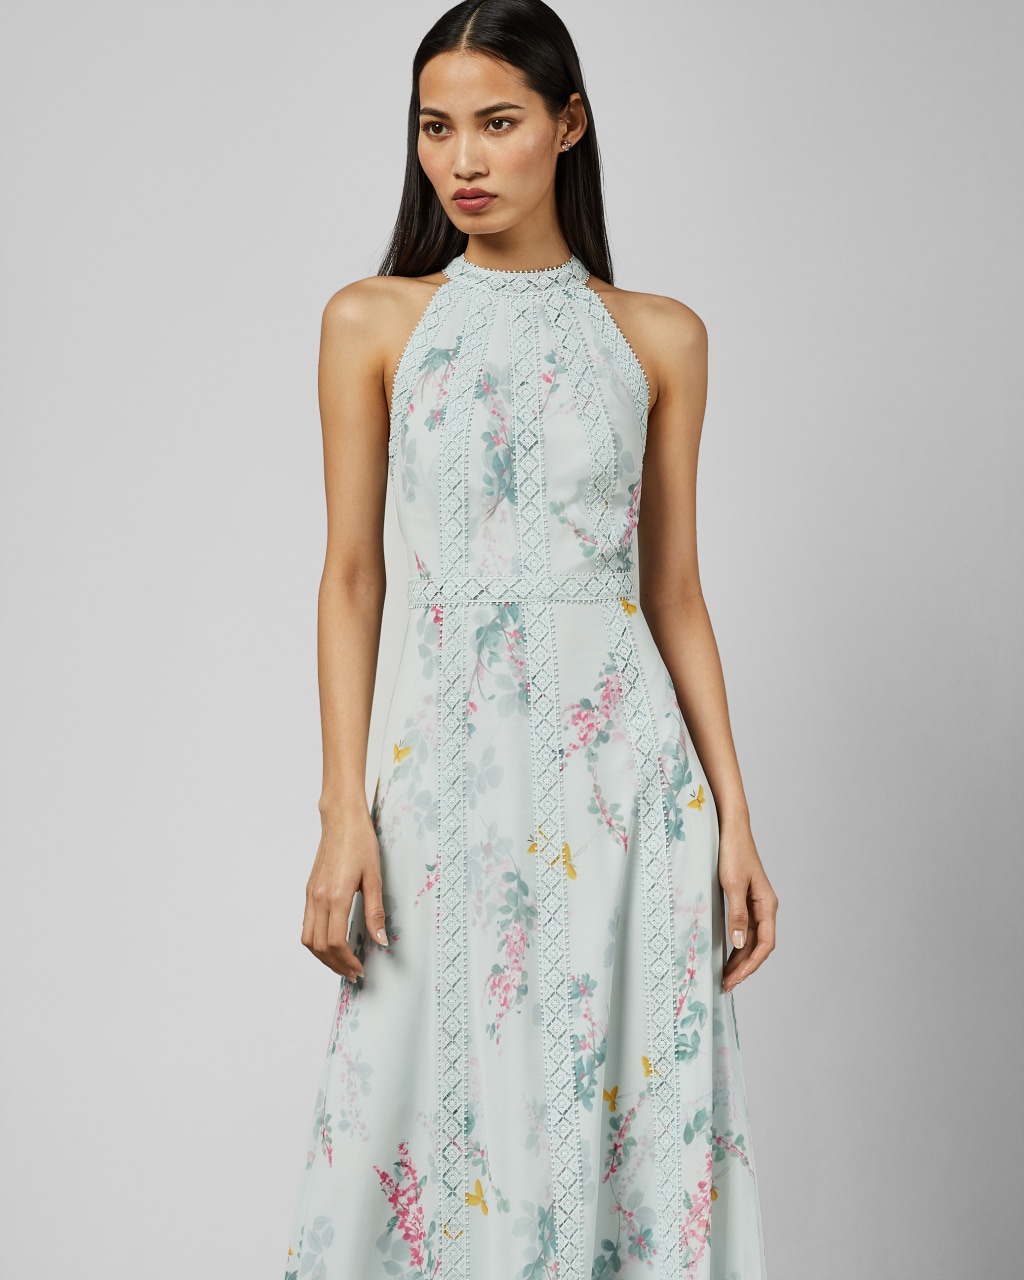 ispirato dresses buy online